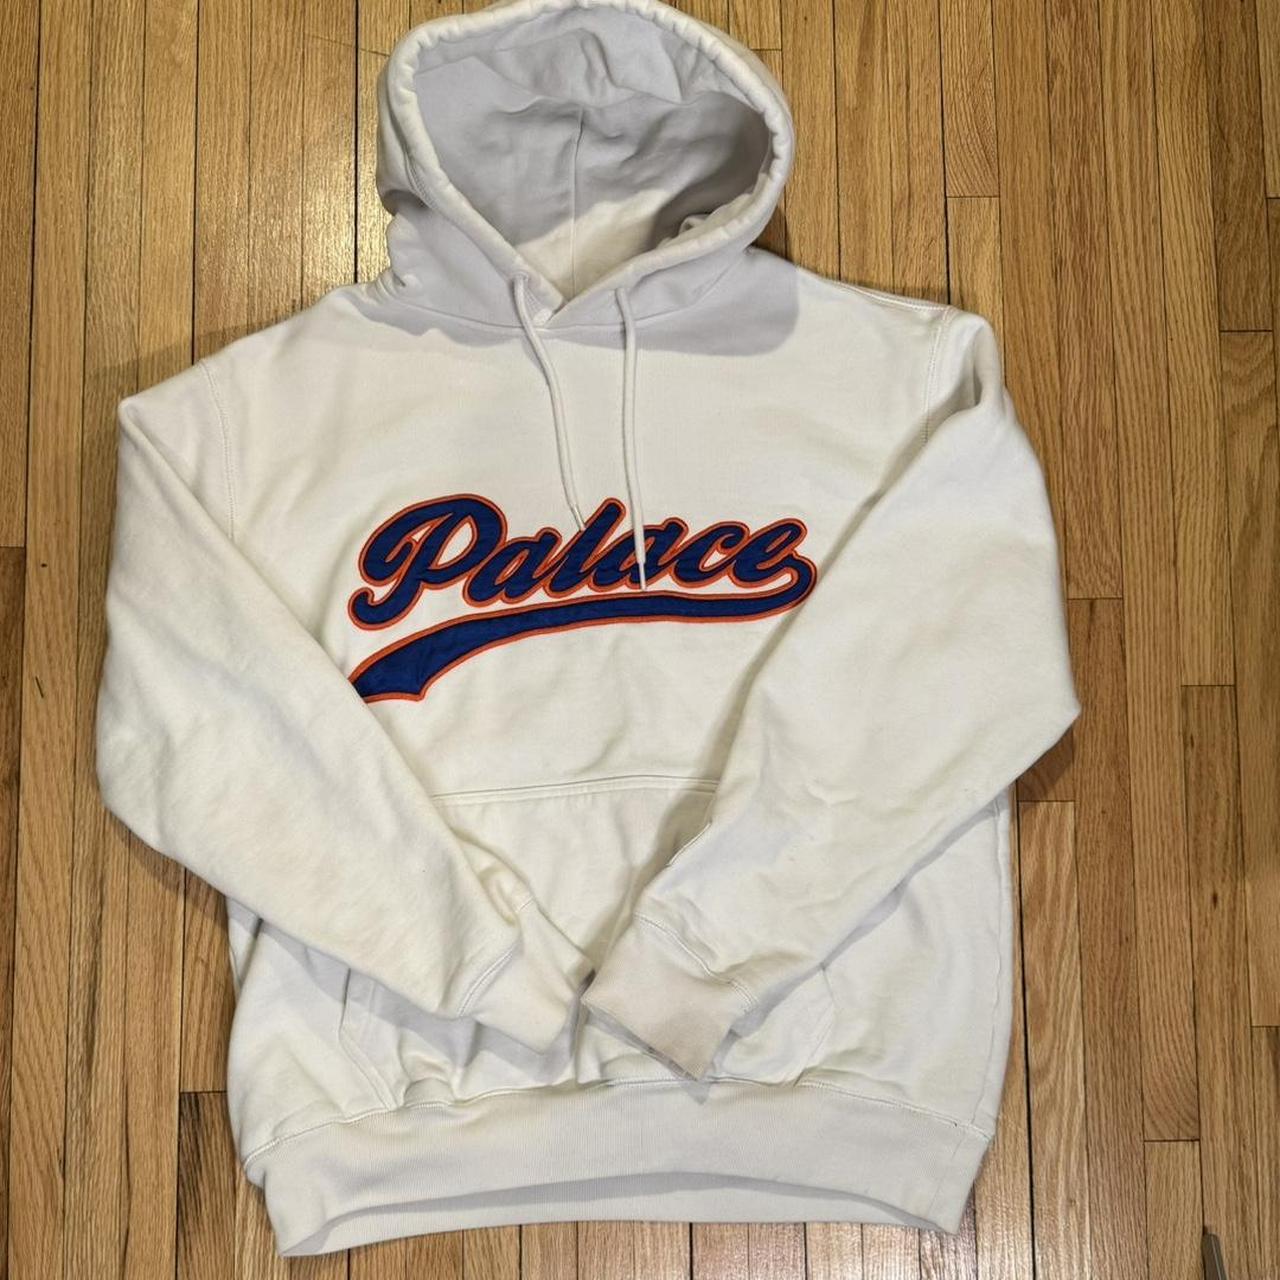 Palace hoodie (fits like an M) - Depop